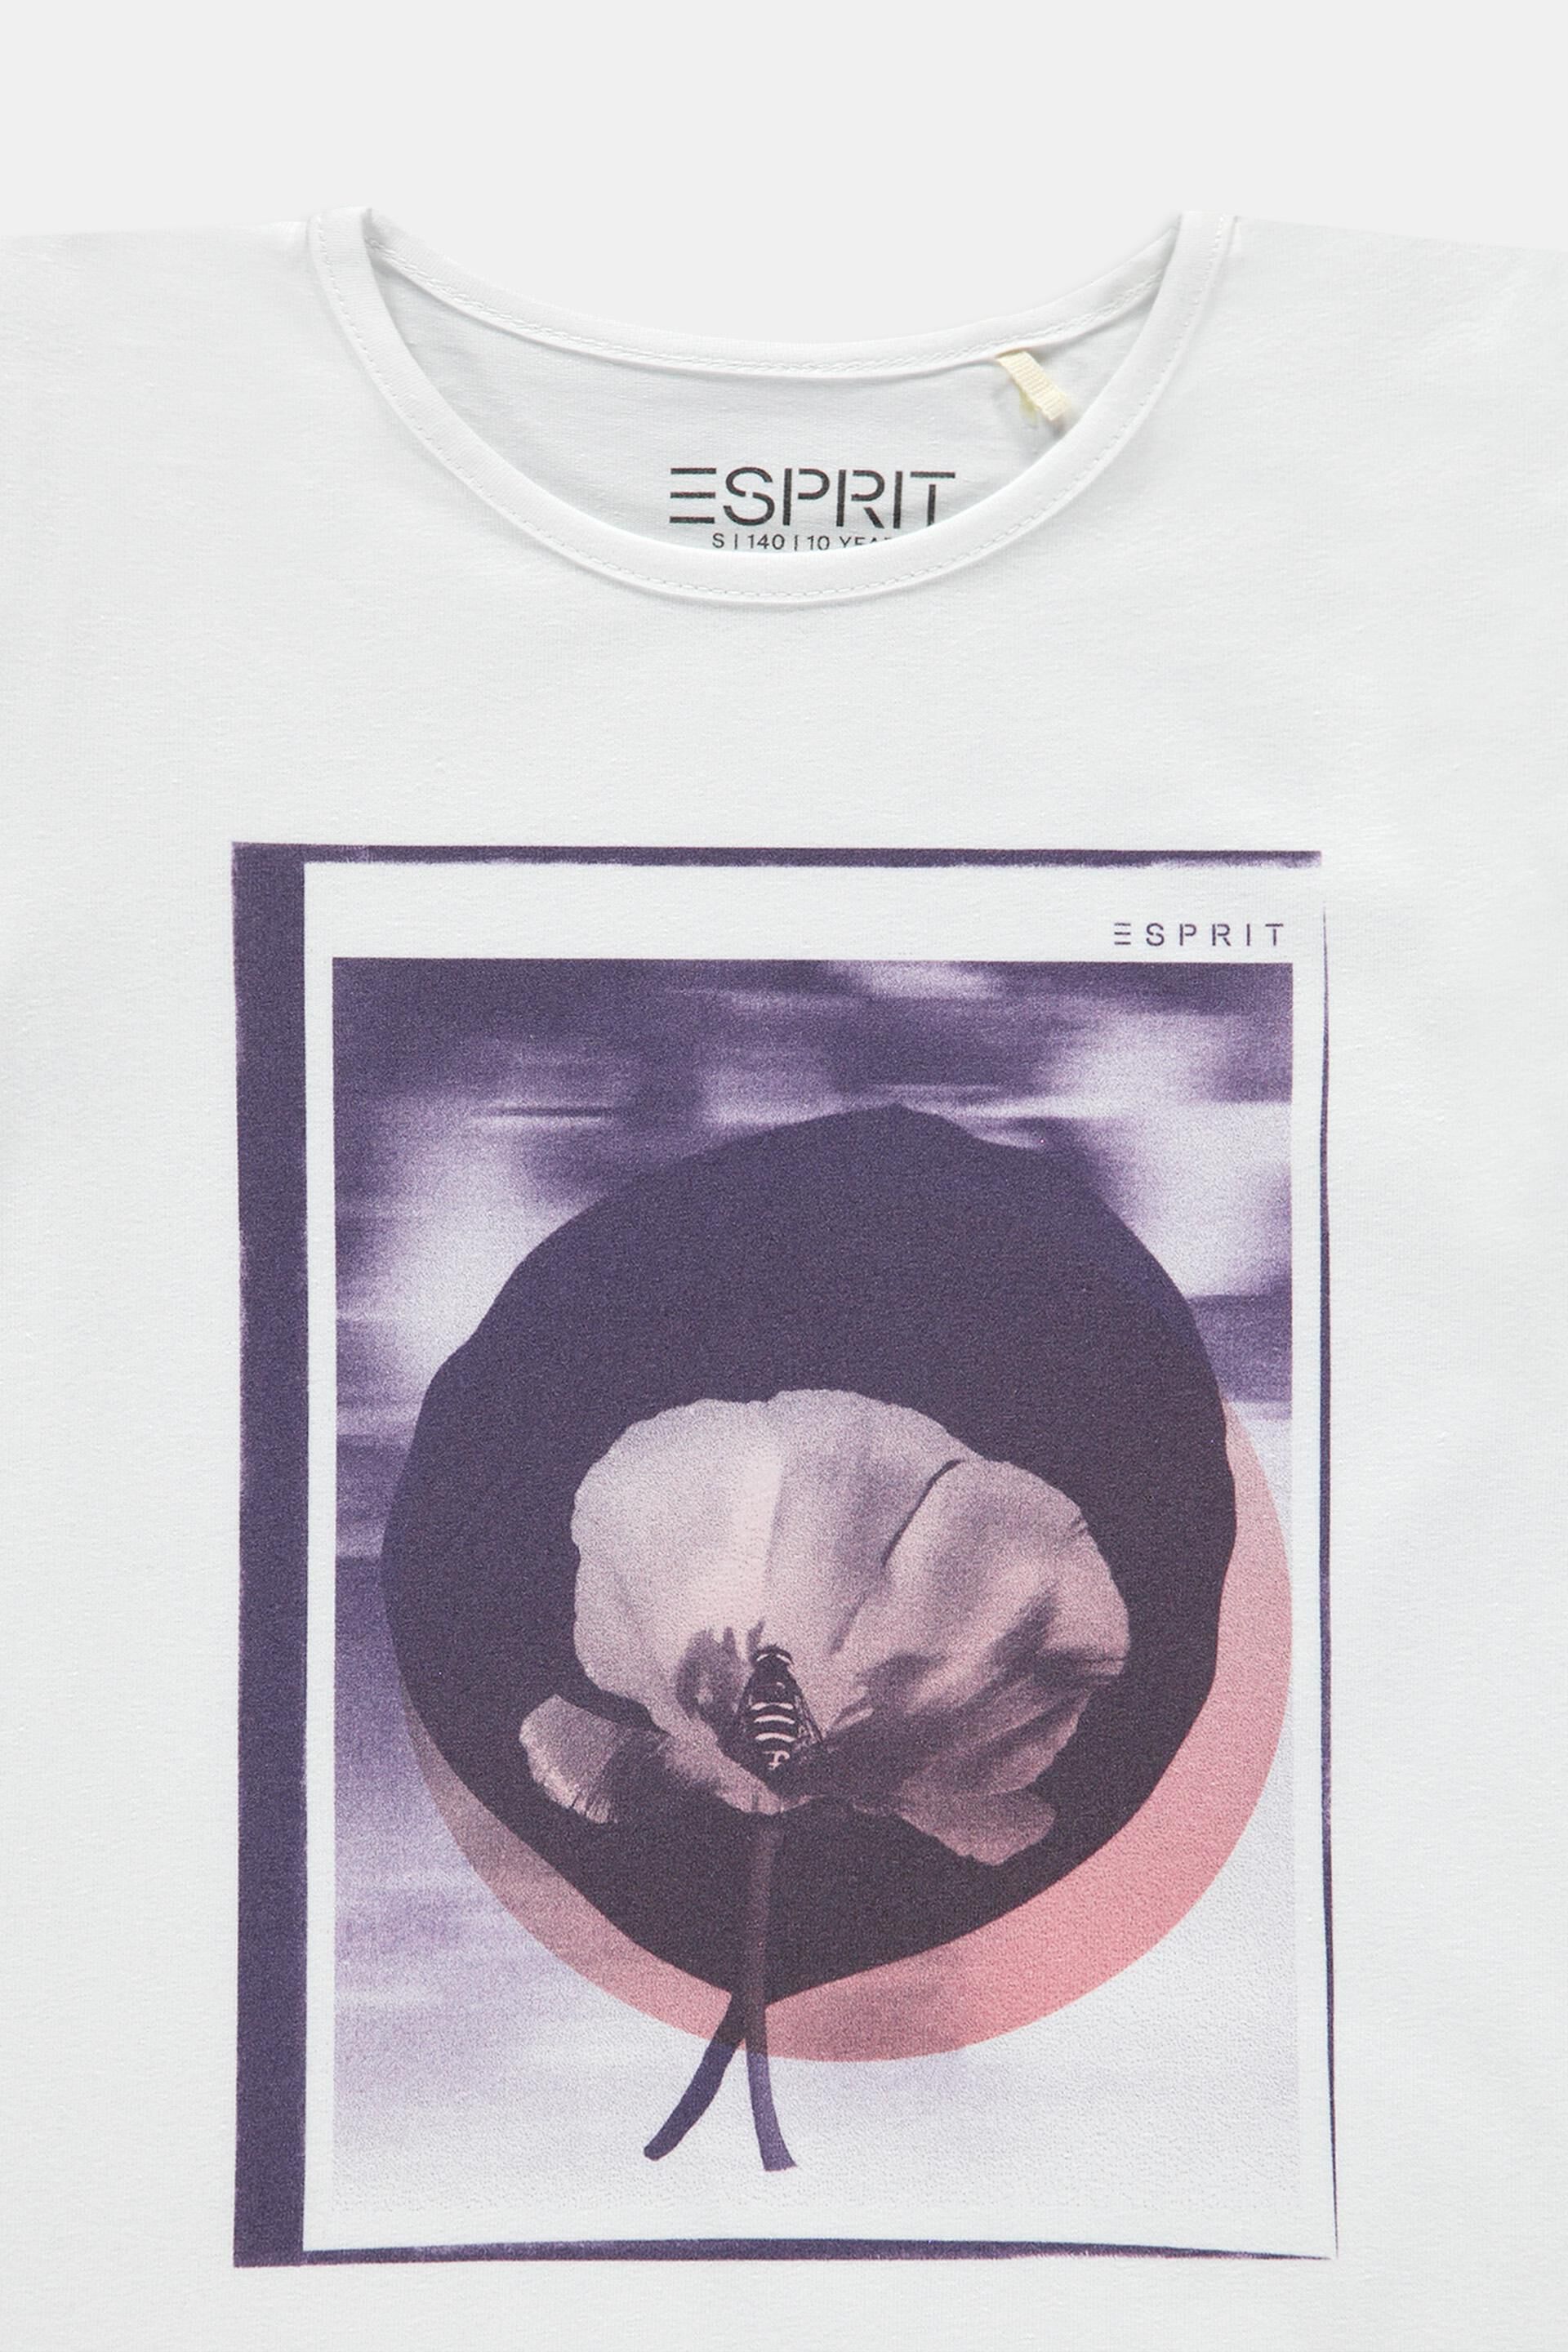 Esprit Outlet T-Shirts